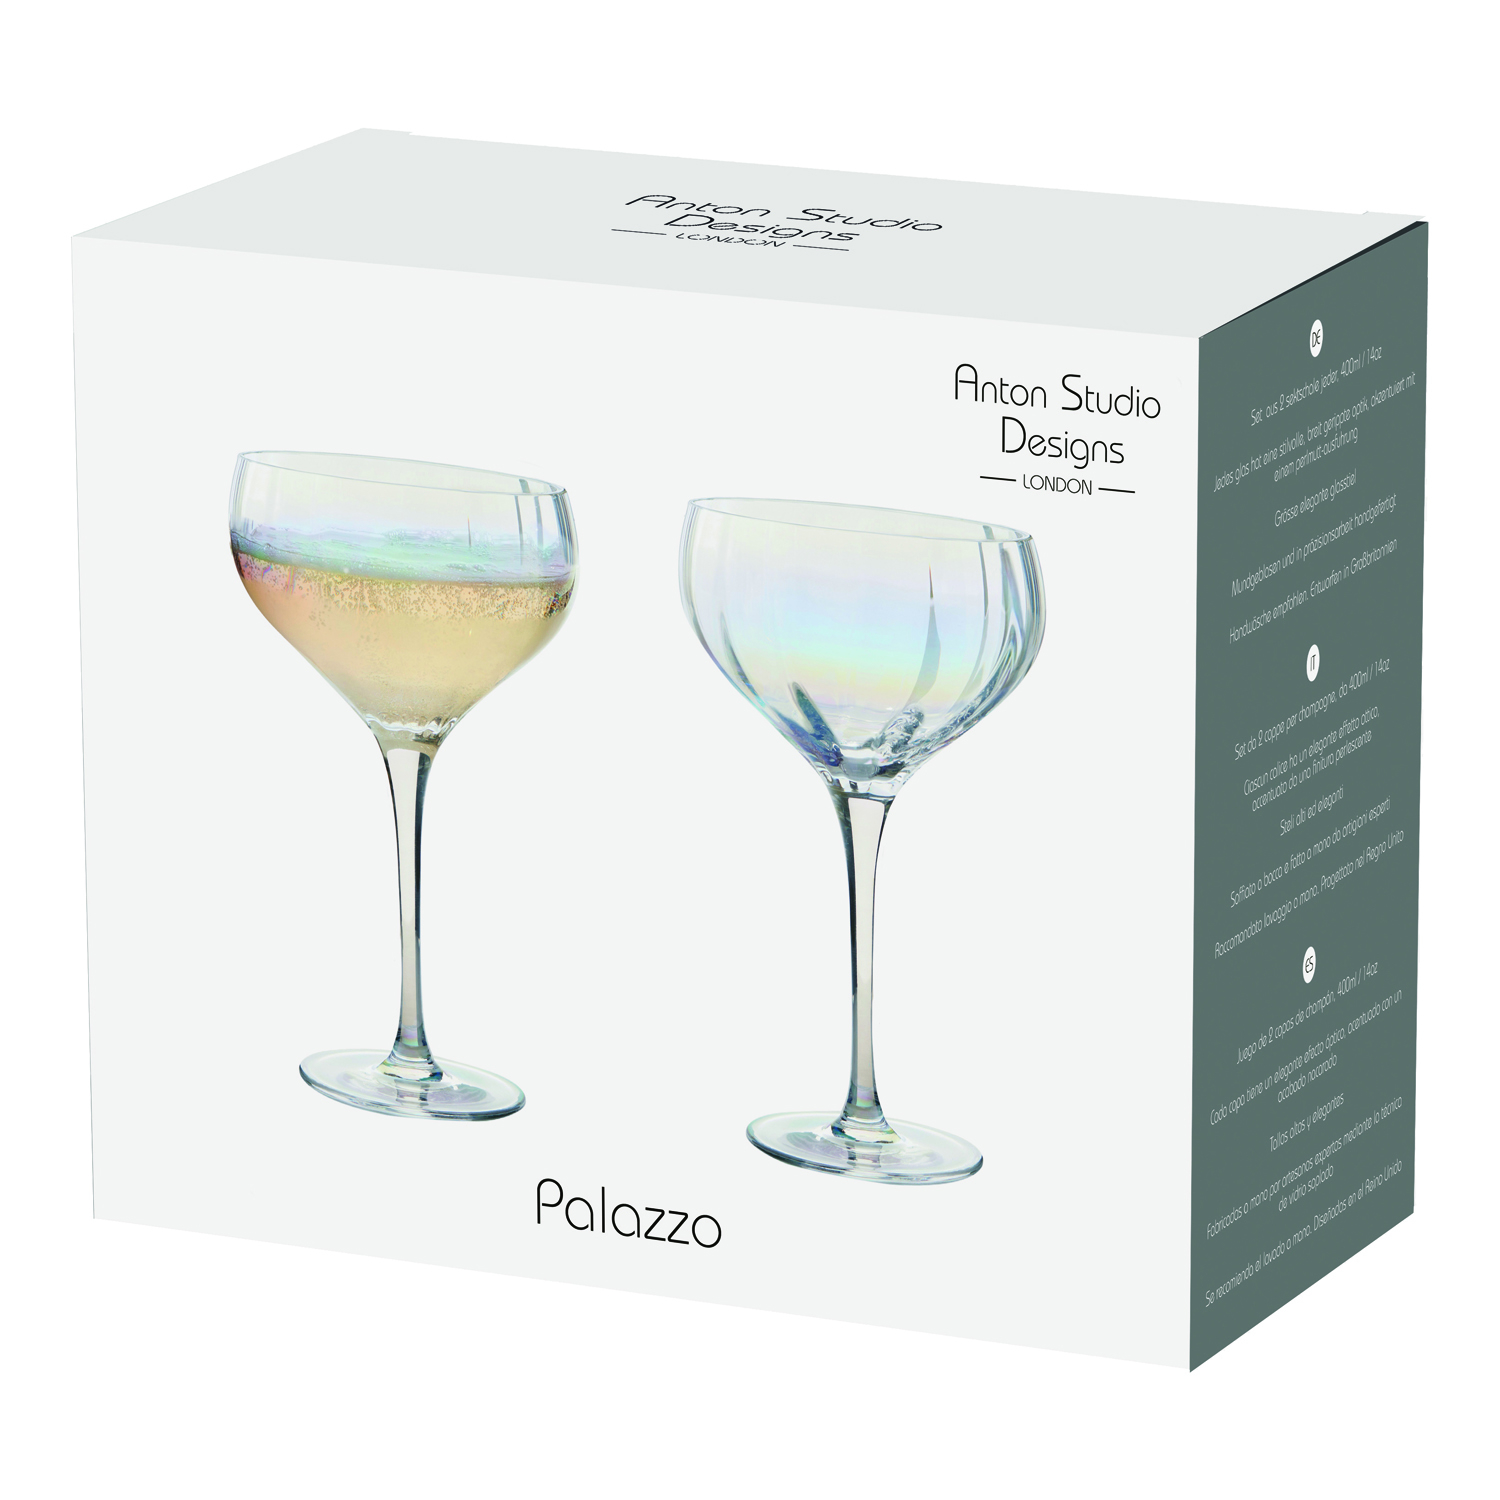 Visuel de Palazzo - Coupes à champagne, Set 2 - Anton Studio Designs Élevez votre table avec les superbes verres Palazzo. Leur élégance réside dans leurs longues tiges et leur profil élancé, apportant sophistication à chaque occasion. L'optique verticale sur les bols crée une finition perle élégante pour une touche de